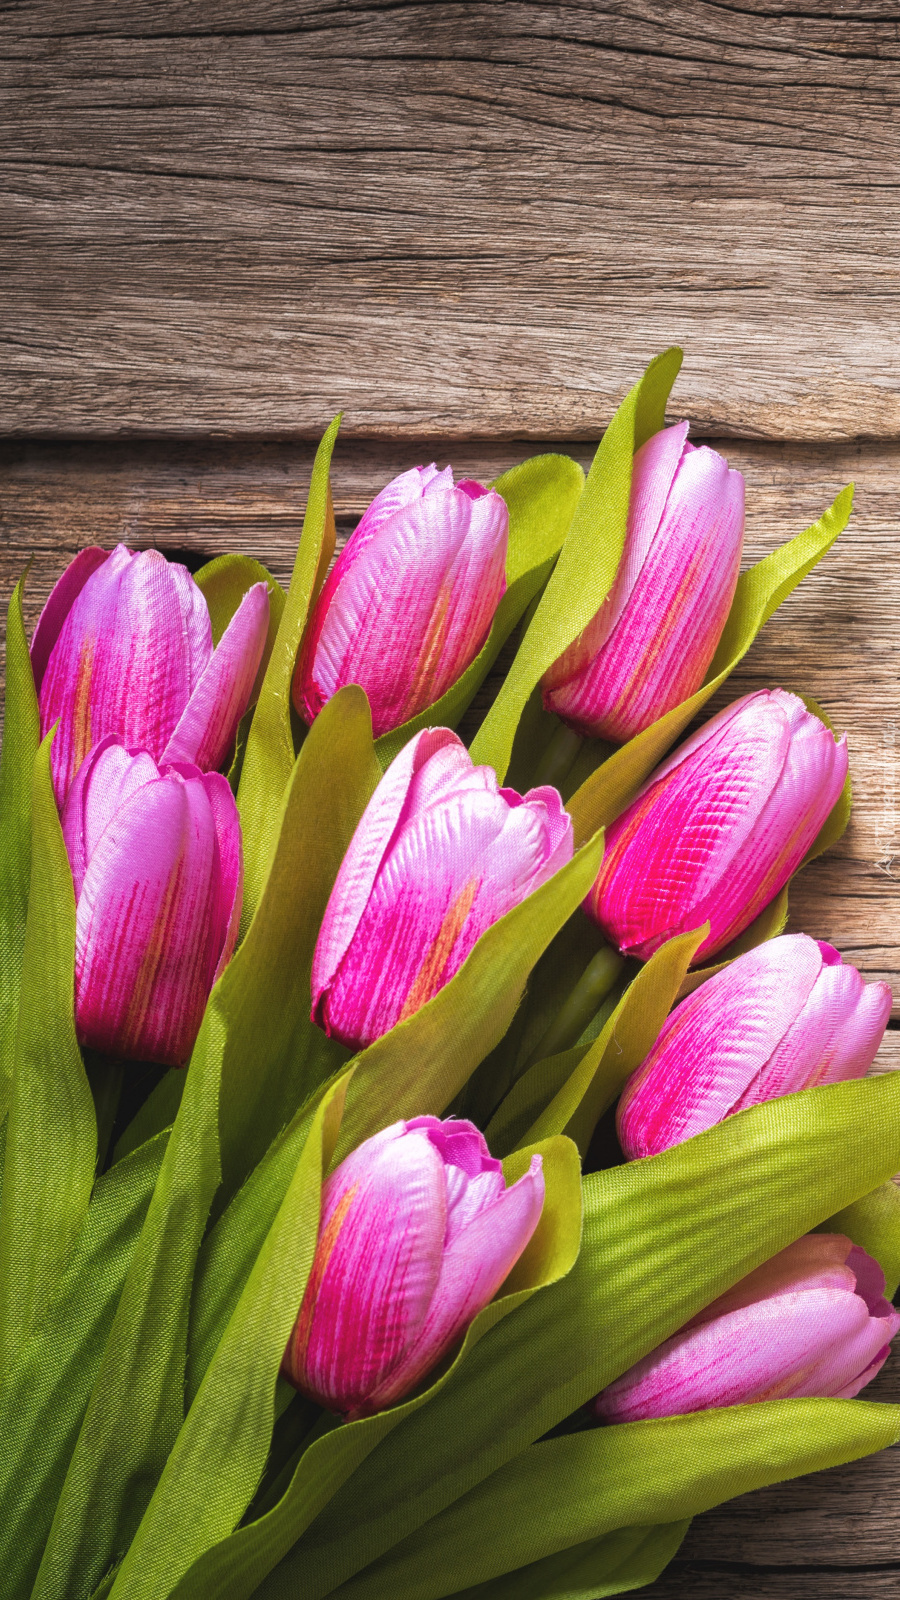 Sztuczne tulipany na deskach